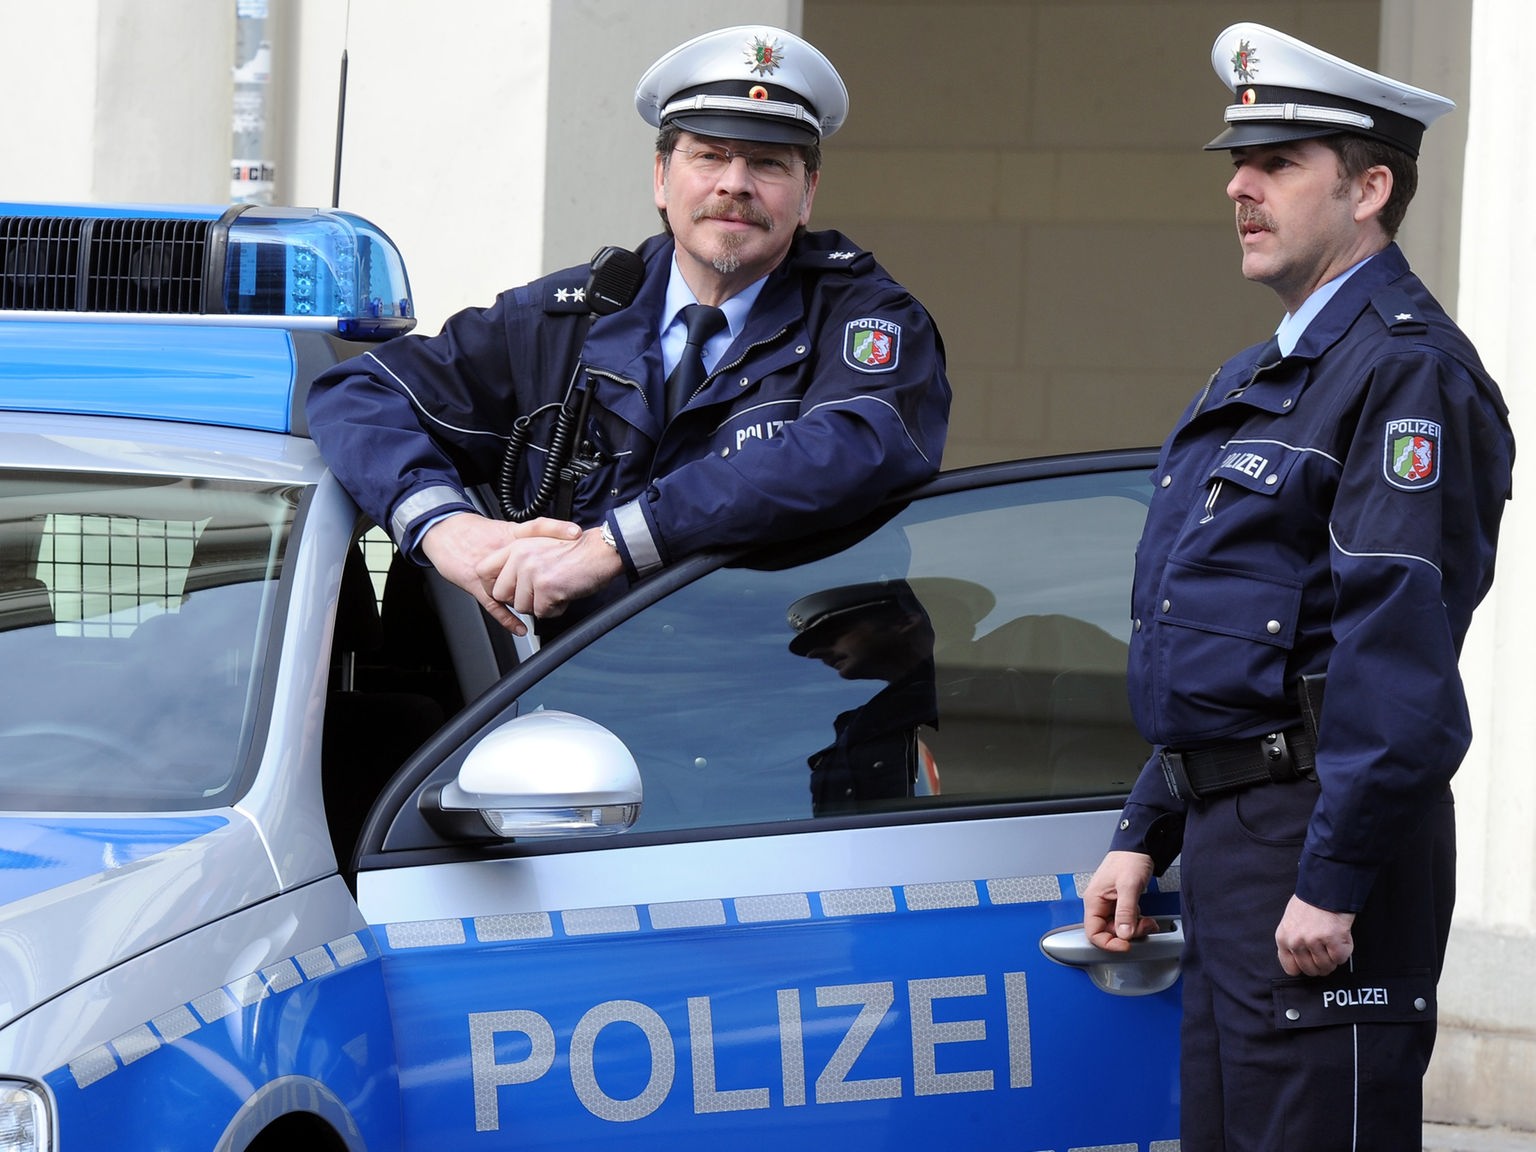 https://www.planet-wissen.de/gesellschaft/verbrechen/die_deutsche_polizei/polizeibefragungddpgjpg100~_v-HintergrundL.jpg